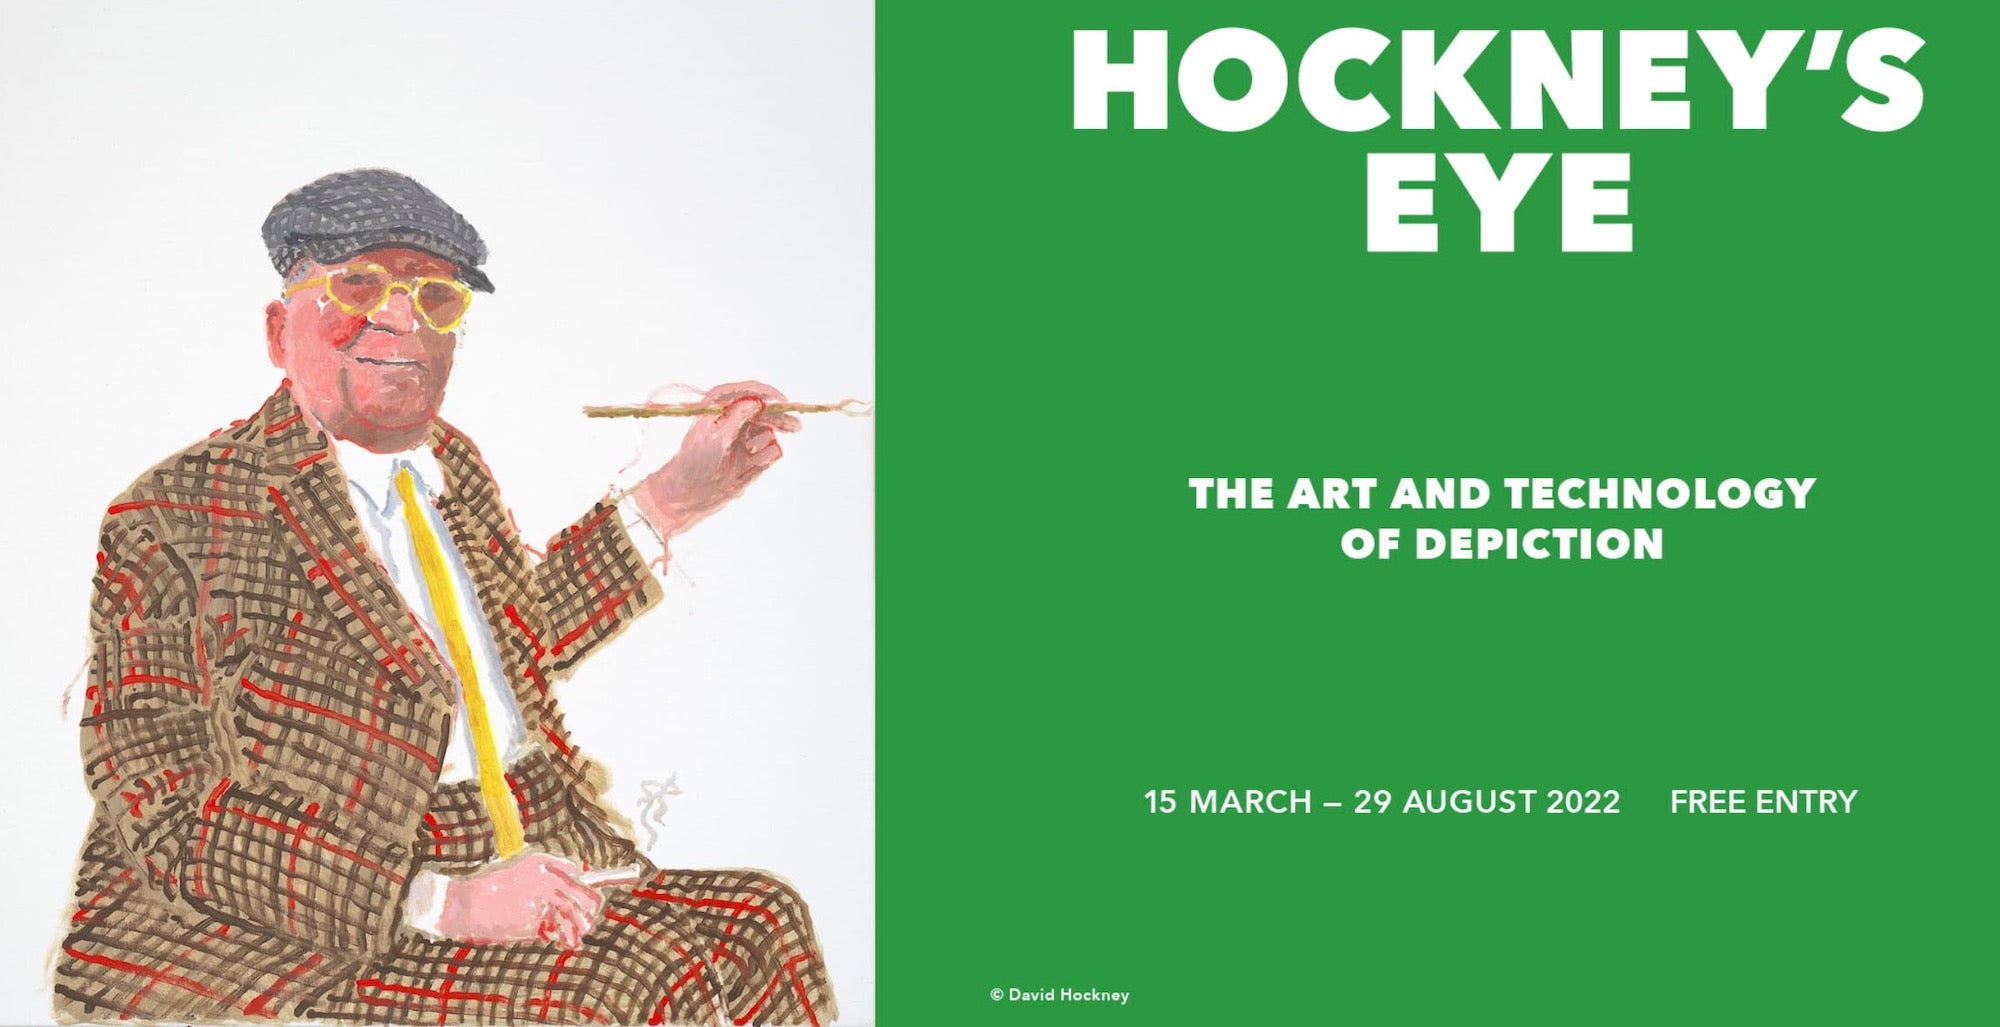 Hockney's Eye exhibition poster 2022